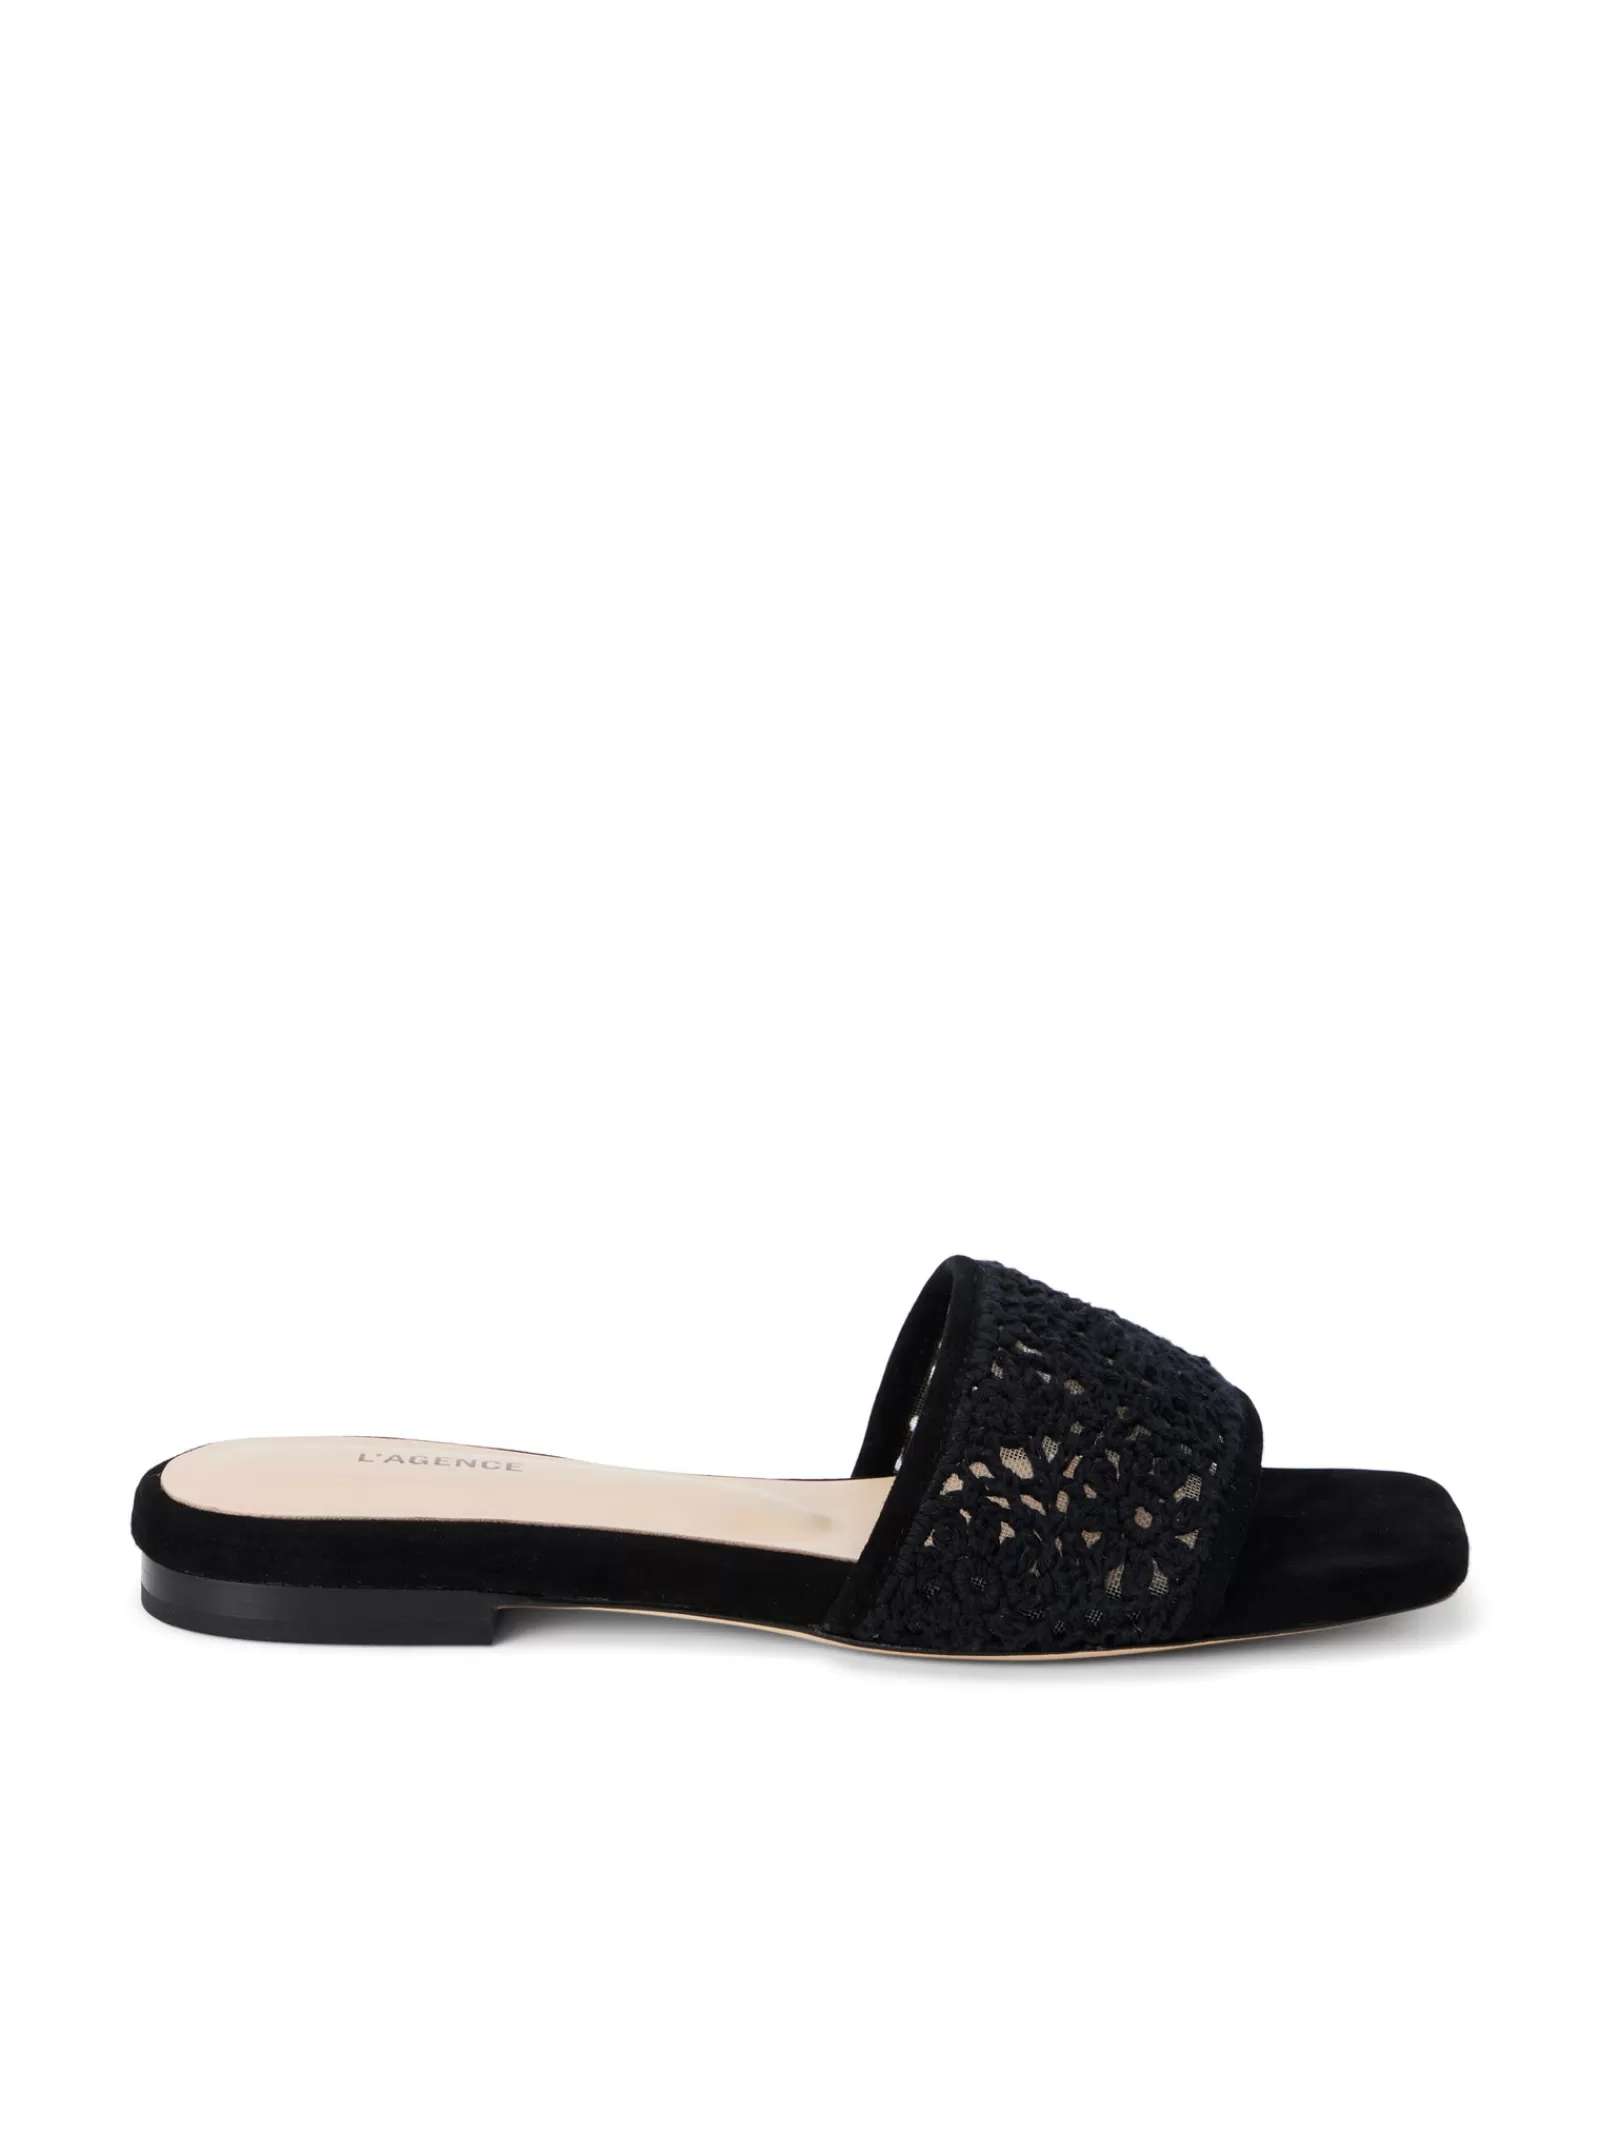 L'AGENCE Armelle Crochet Slide Sandal< Spring Collection | Sandals & Wedges